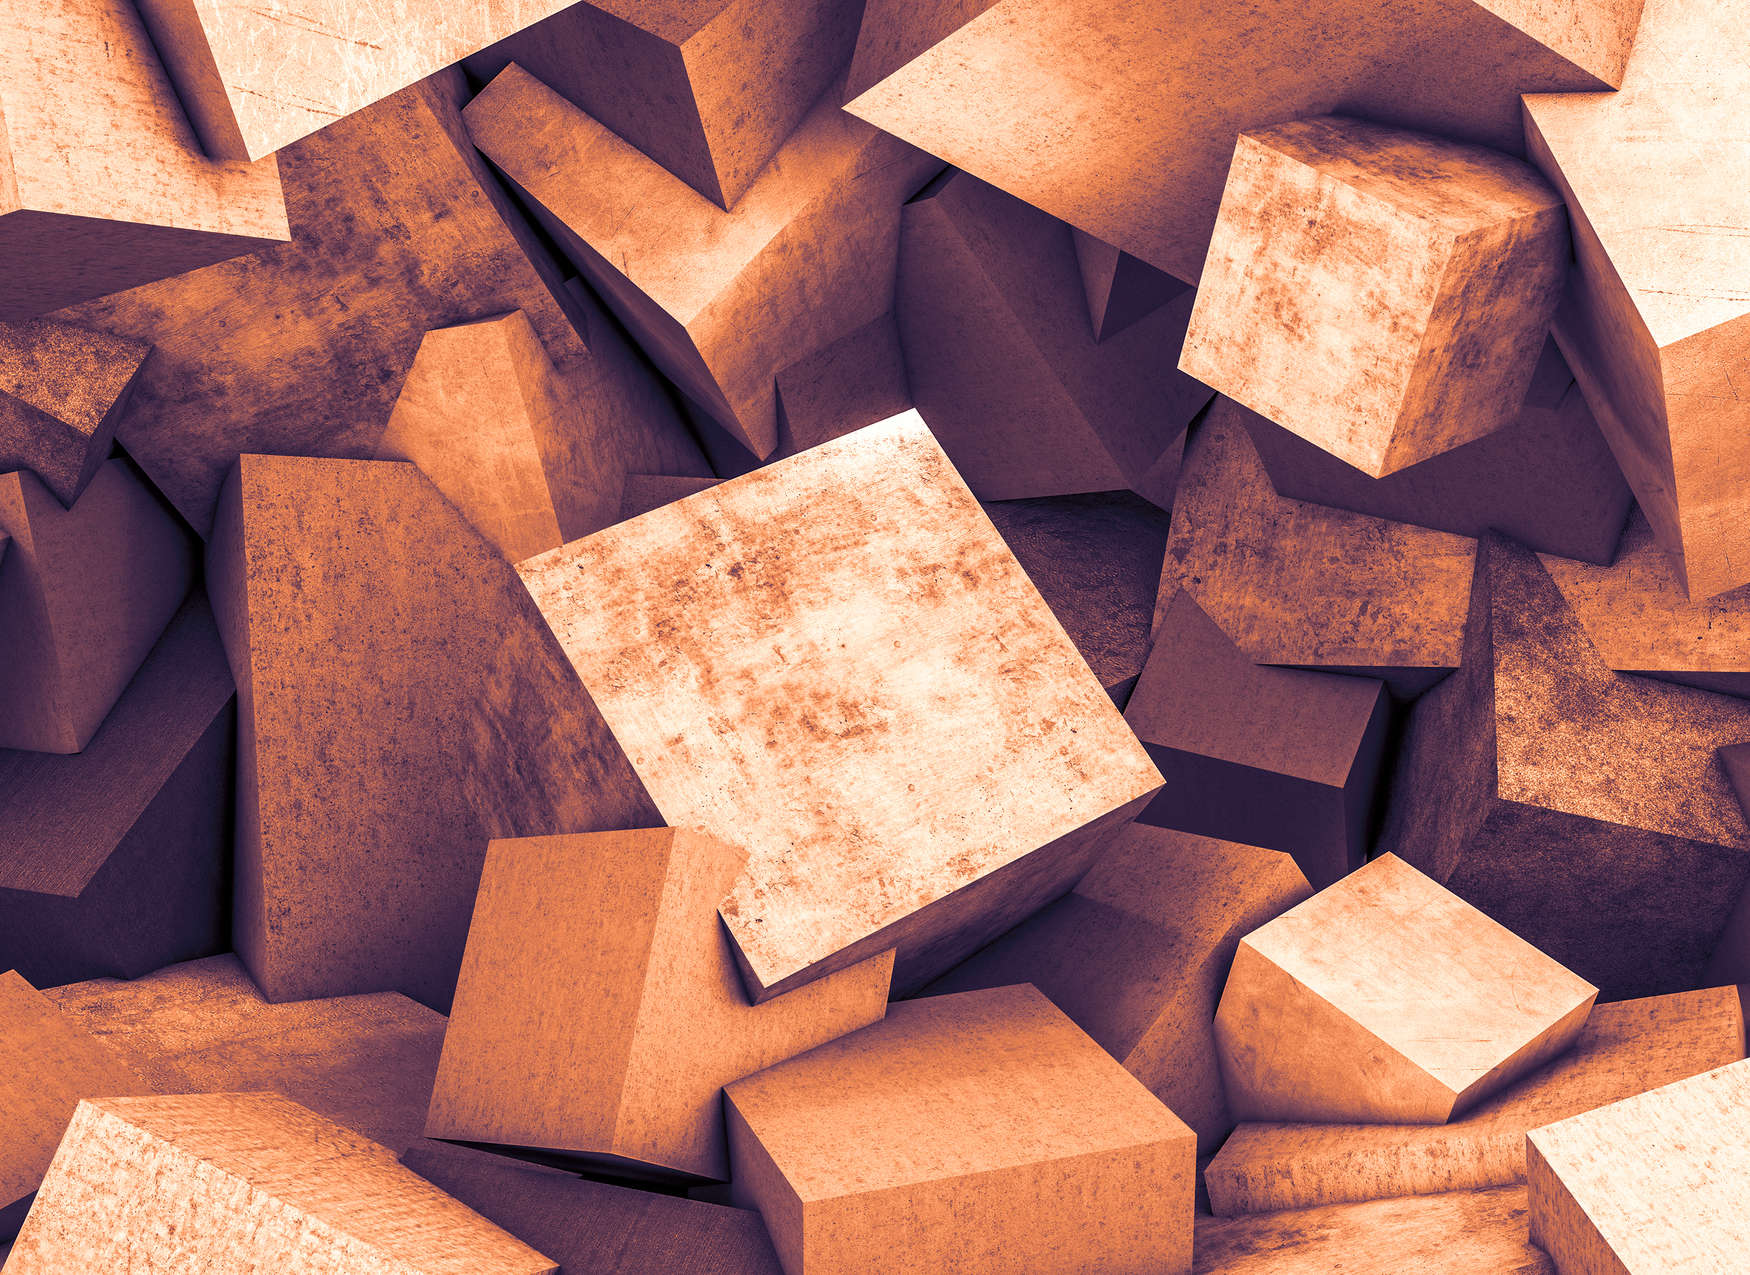             Fotomurali di blocchi di cemento con ottica 3D - Arancione
        